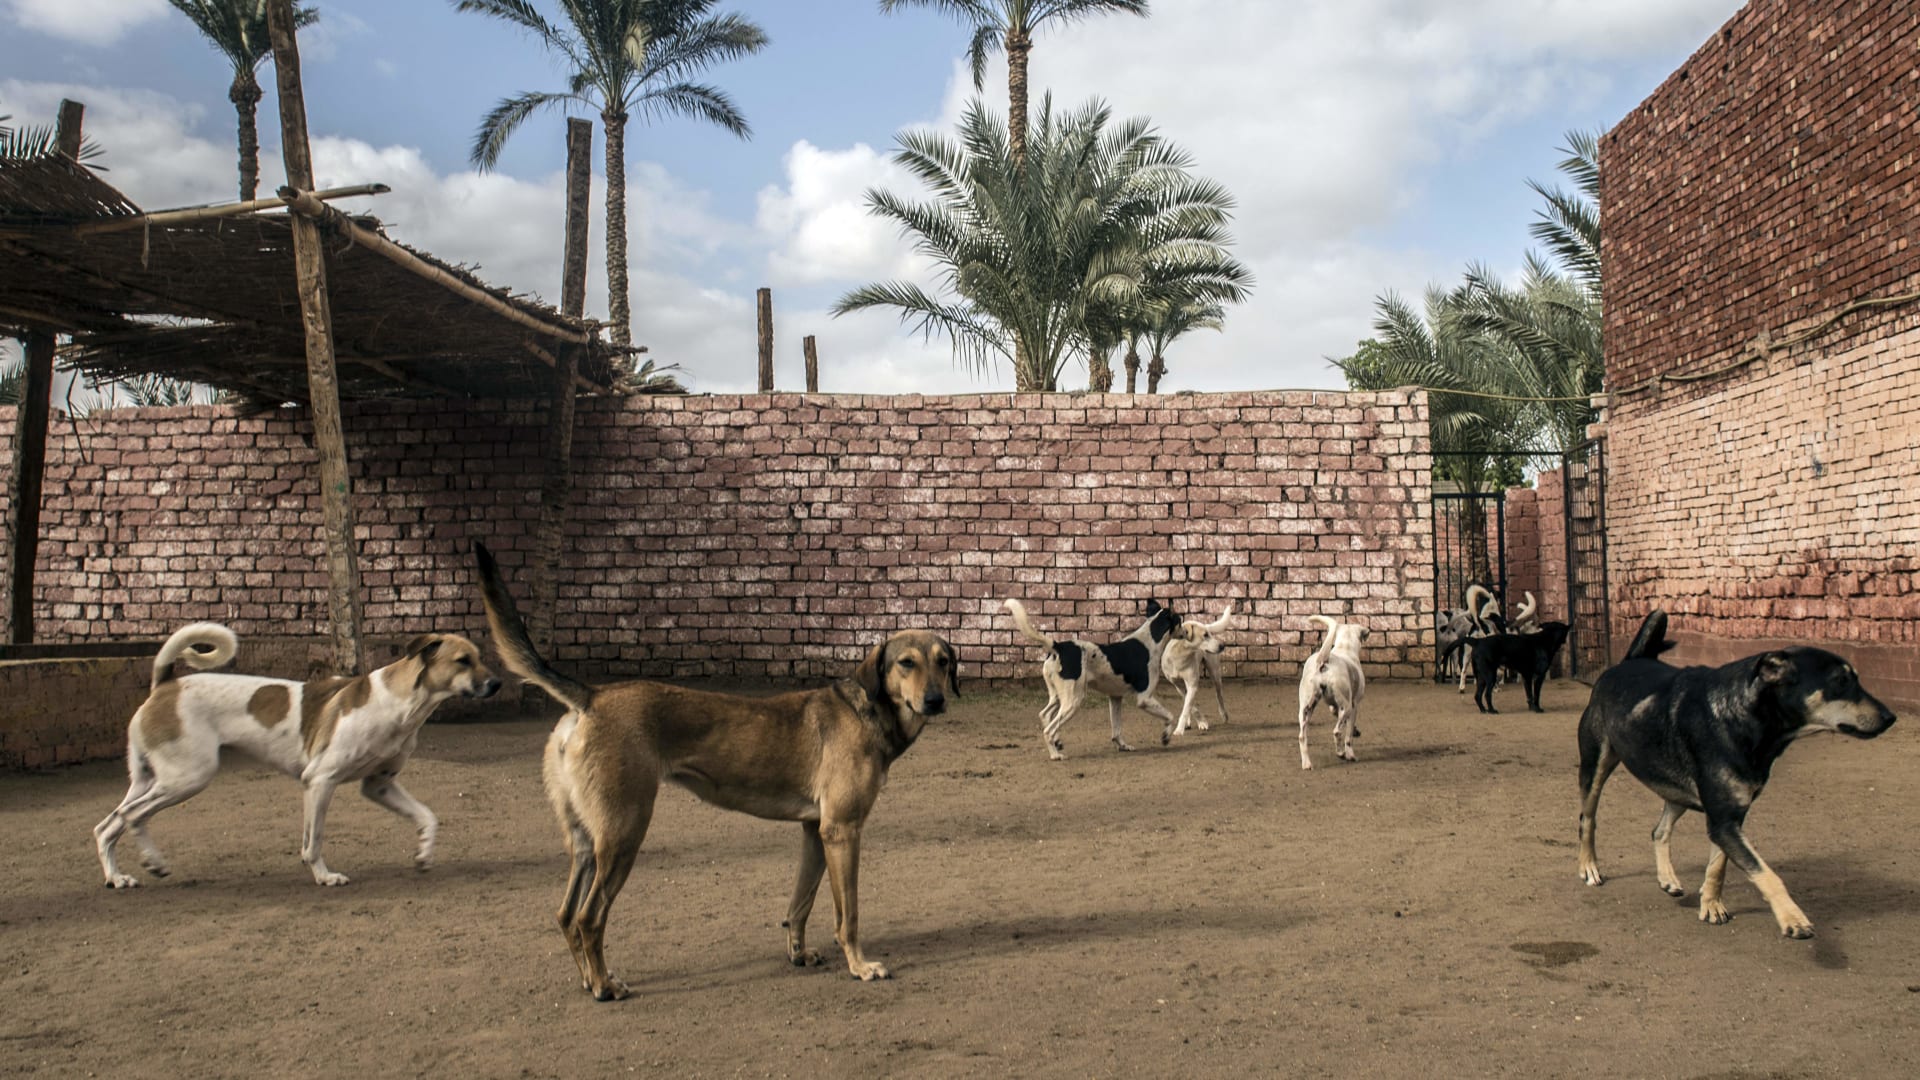 كيف ستتصدى مصر بالقانون لظاهرة حيازة الحيوانات الخطرة؟.. خبراء يجيبون